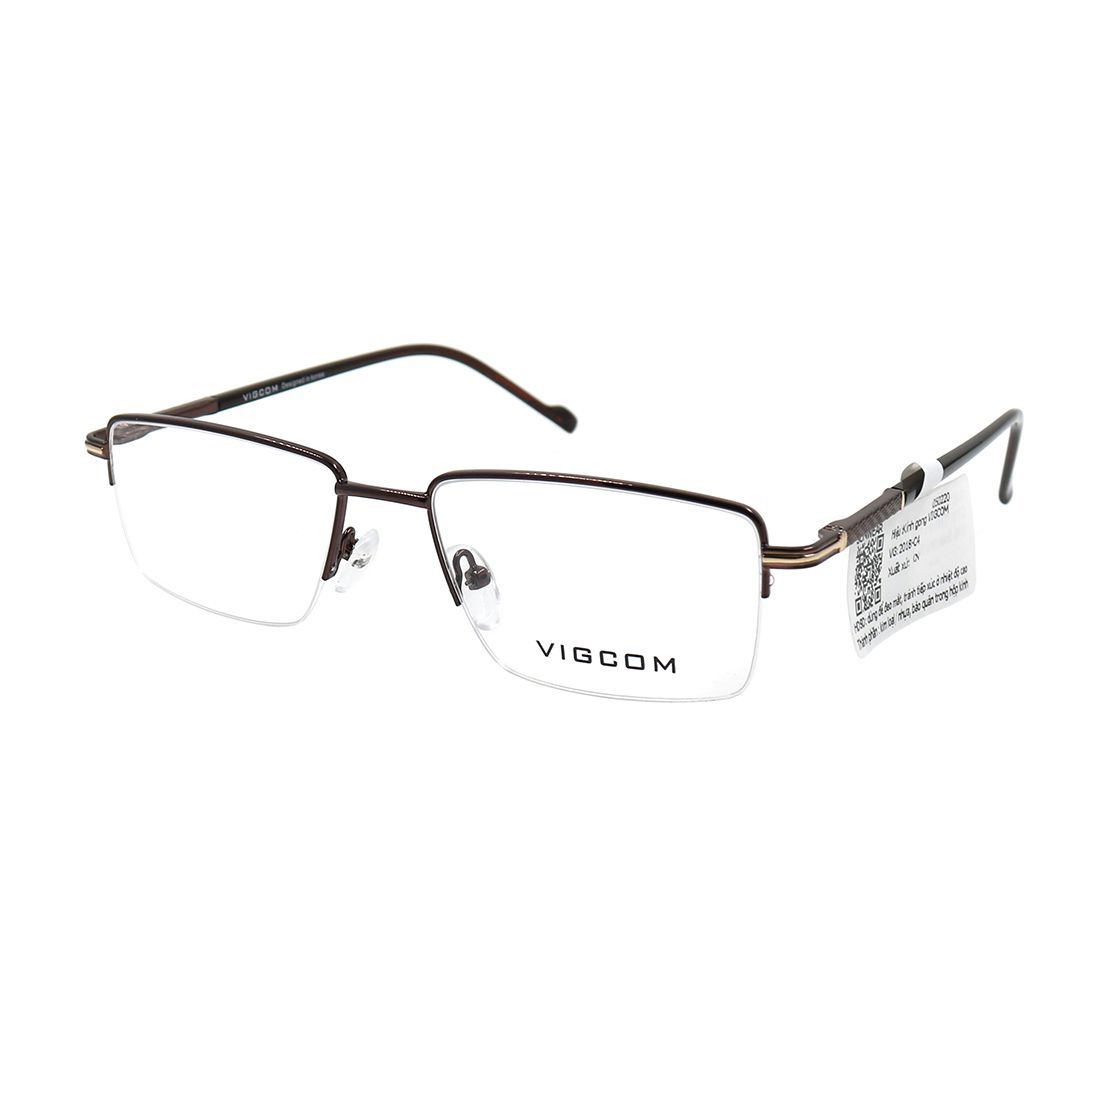  Gọng kính Vigcom VG2018 C4 